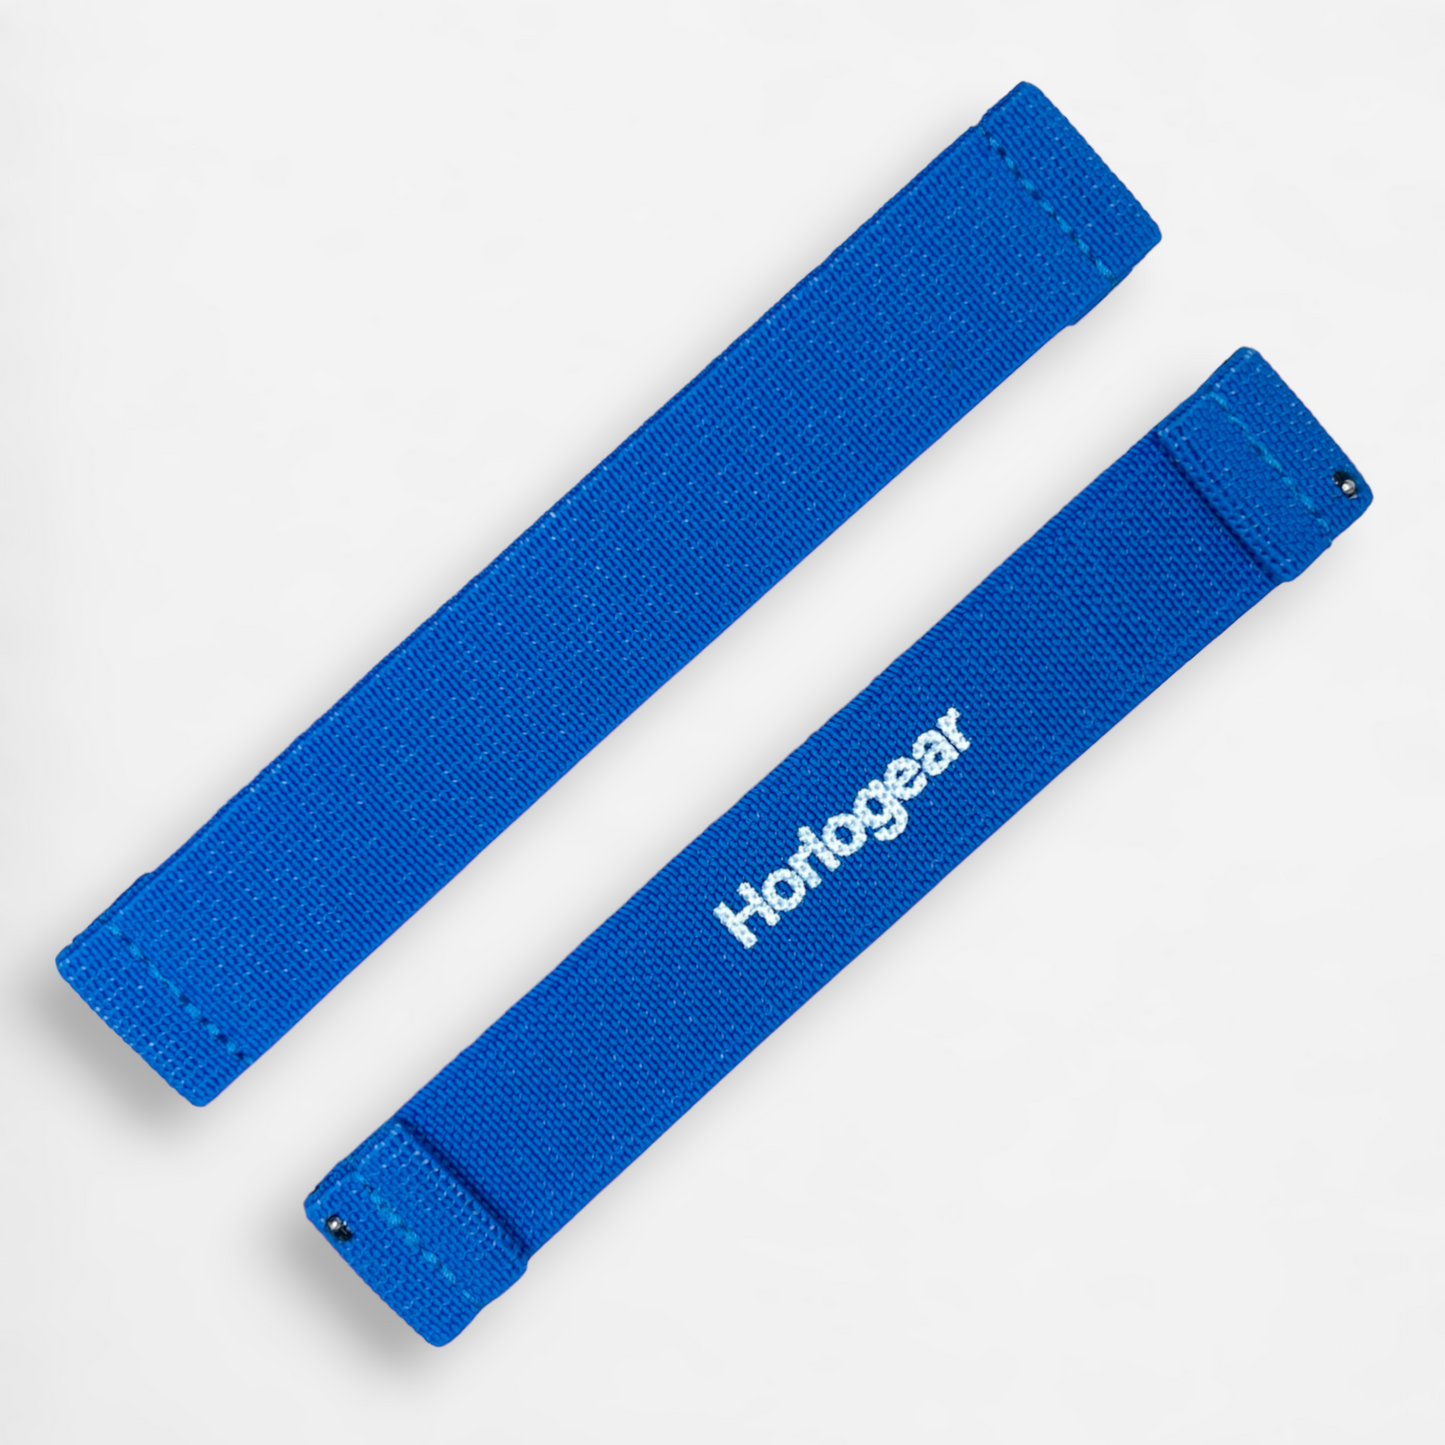 Cinturino HorloFLEX (blu vivido)